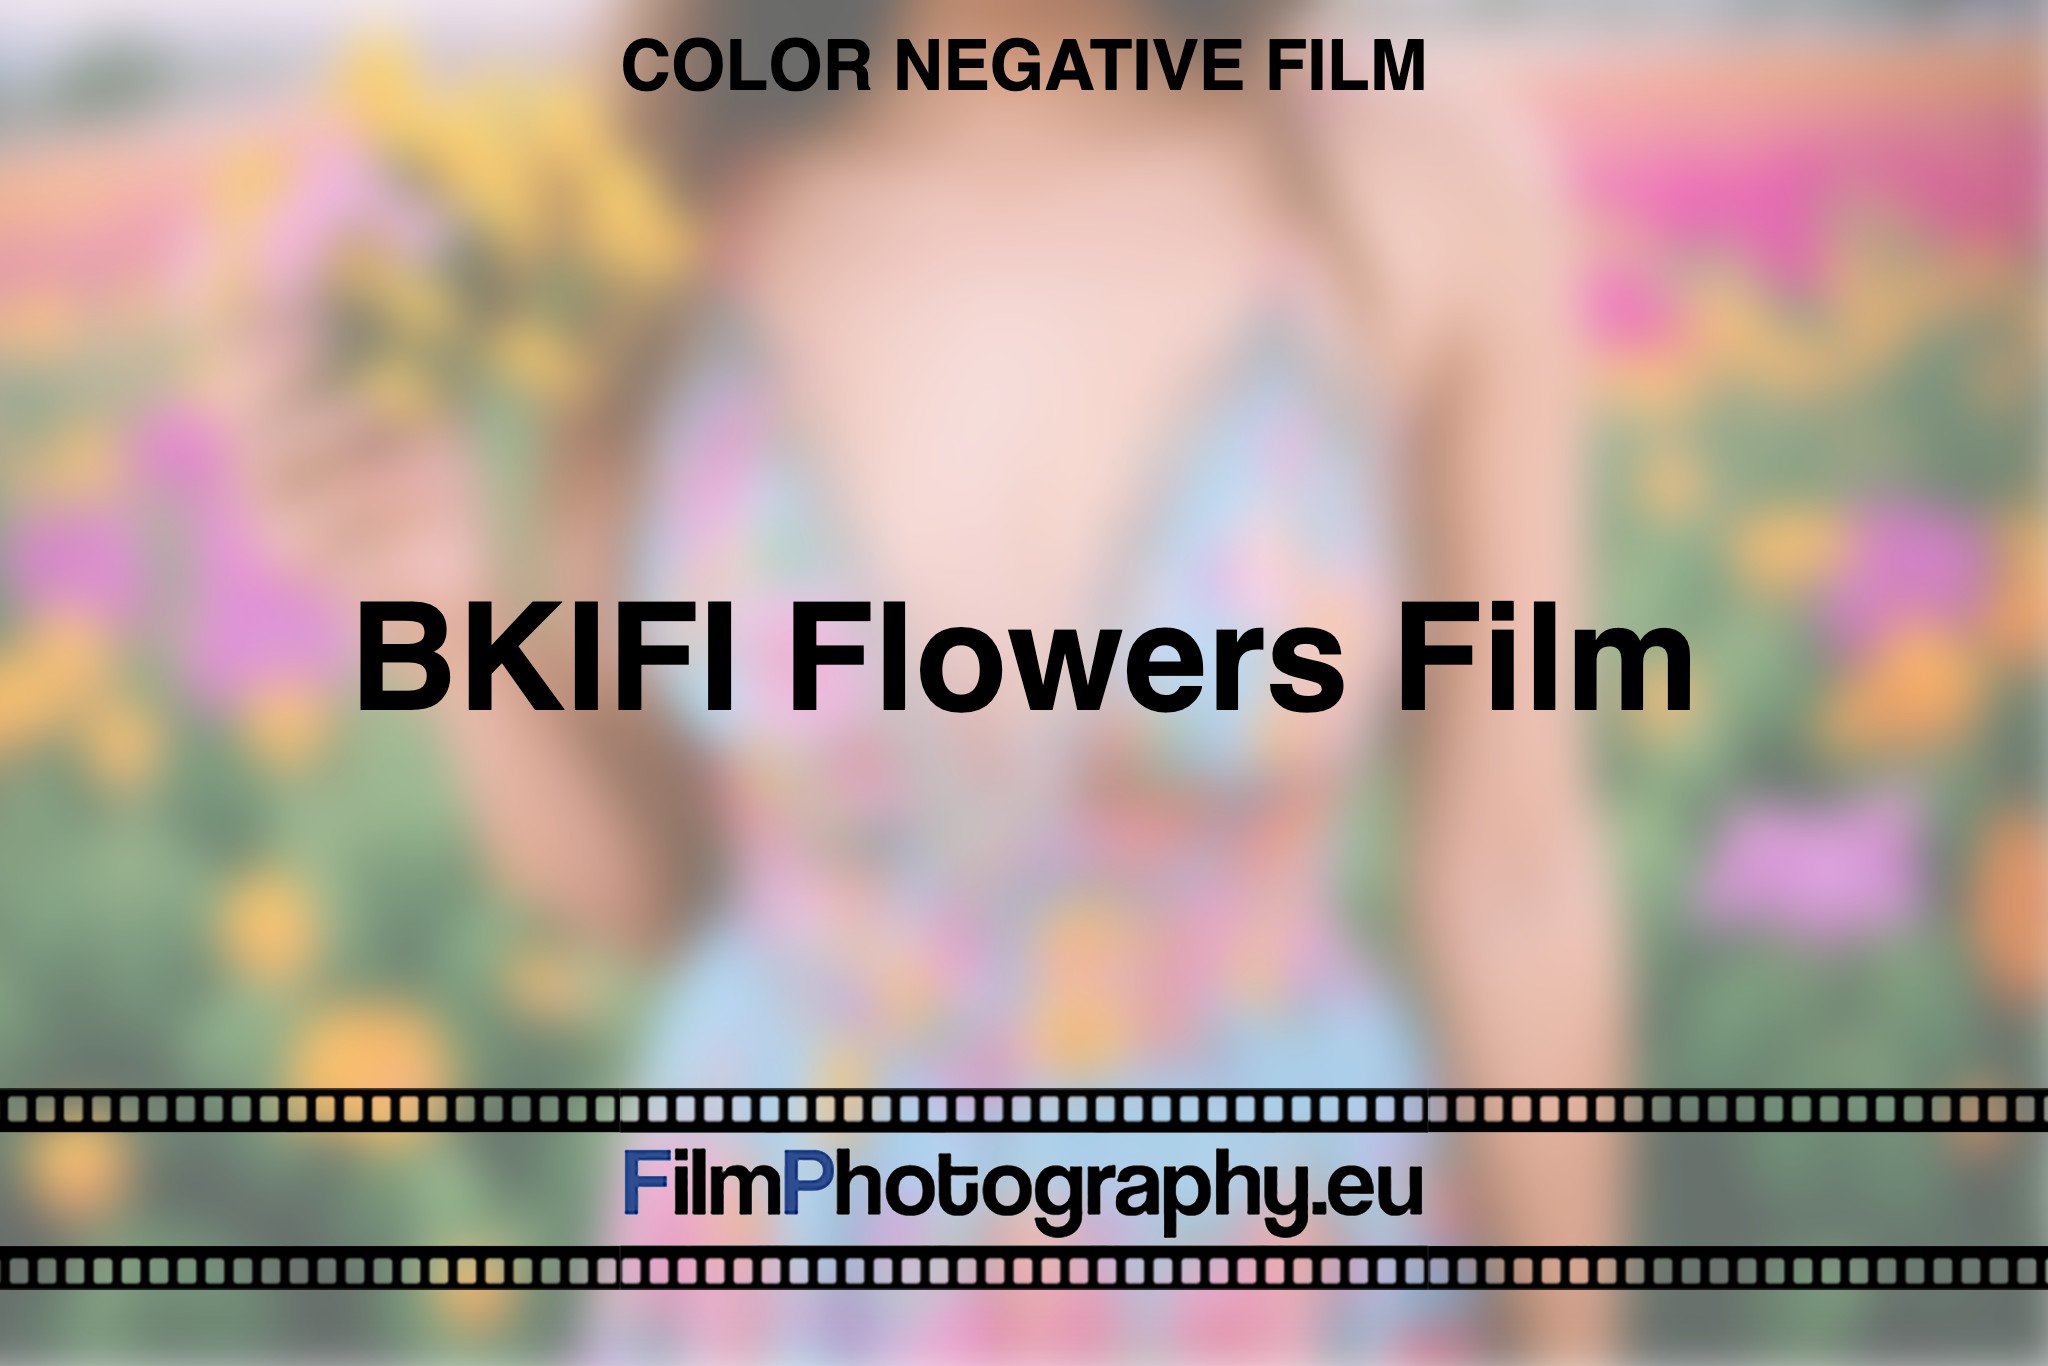 BKIFI-Flowers-Film-Color-negative-film-bnv